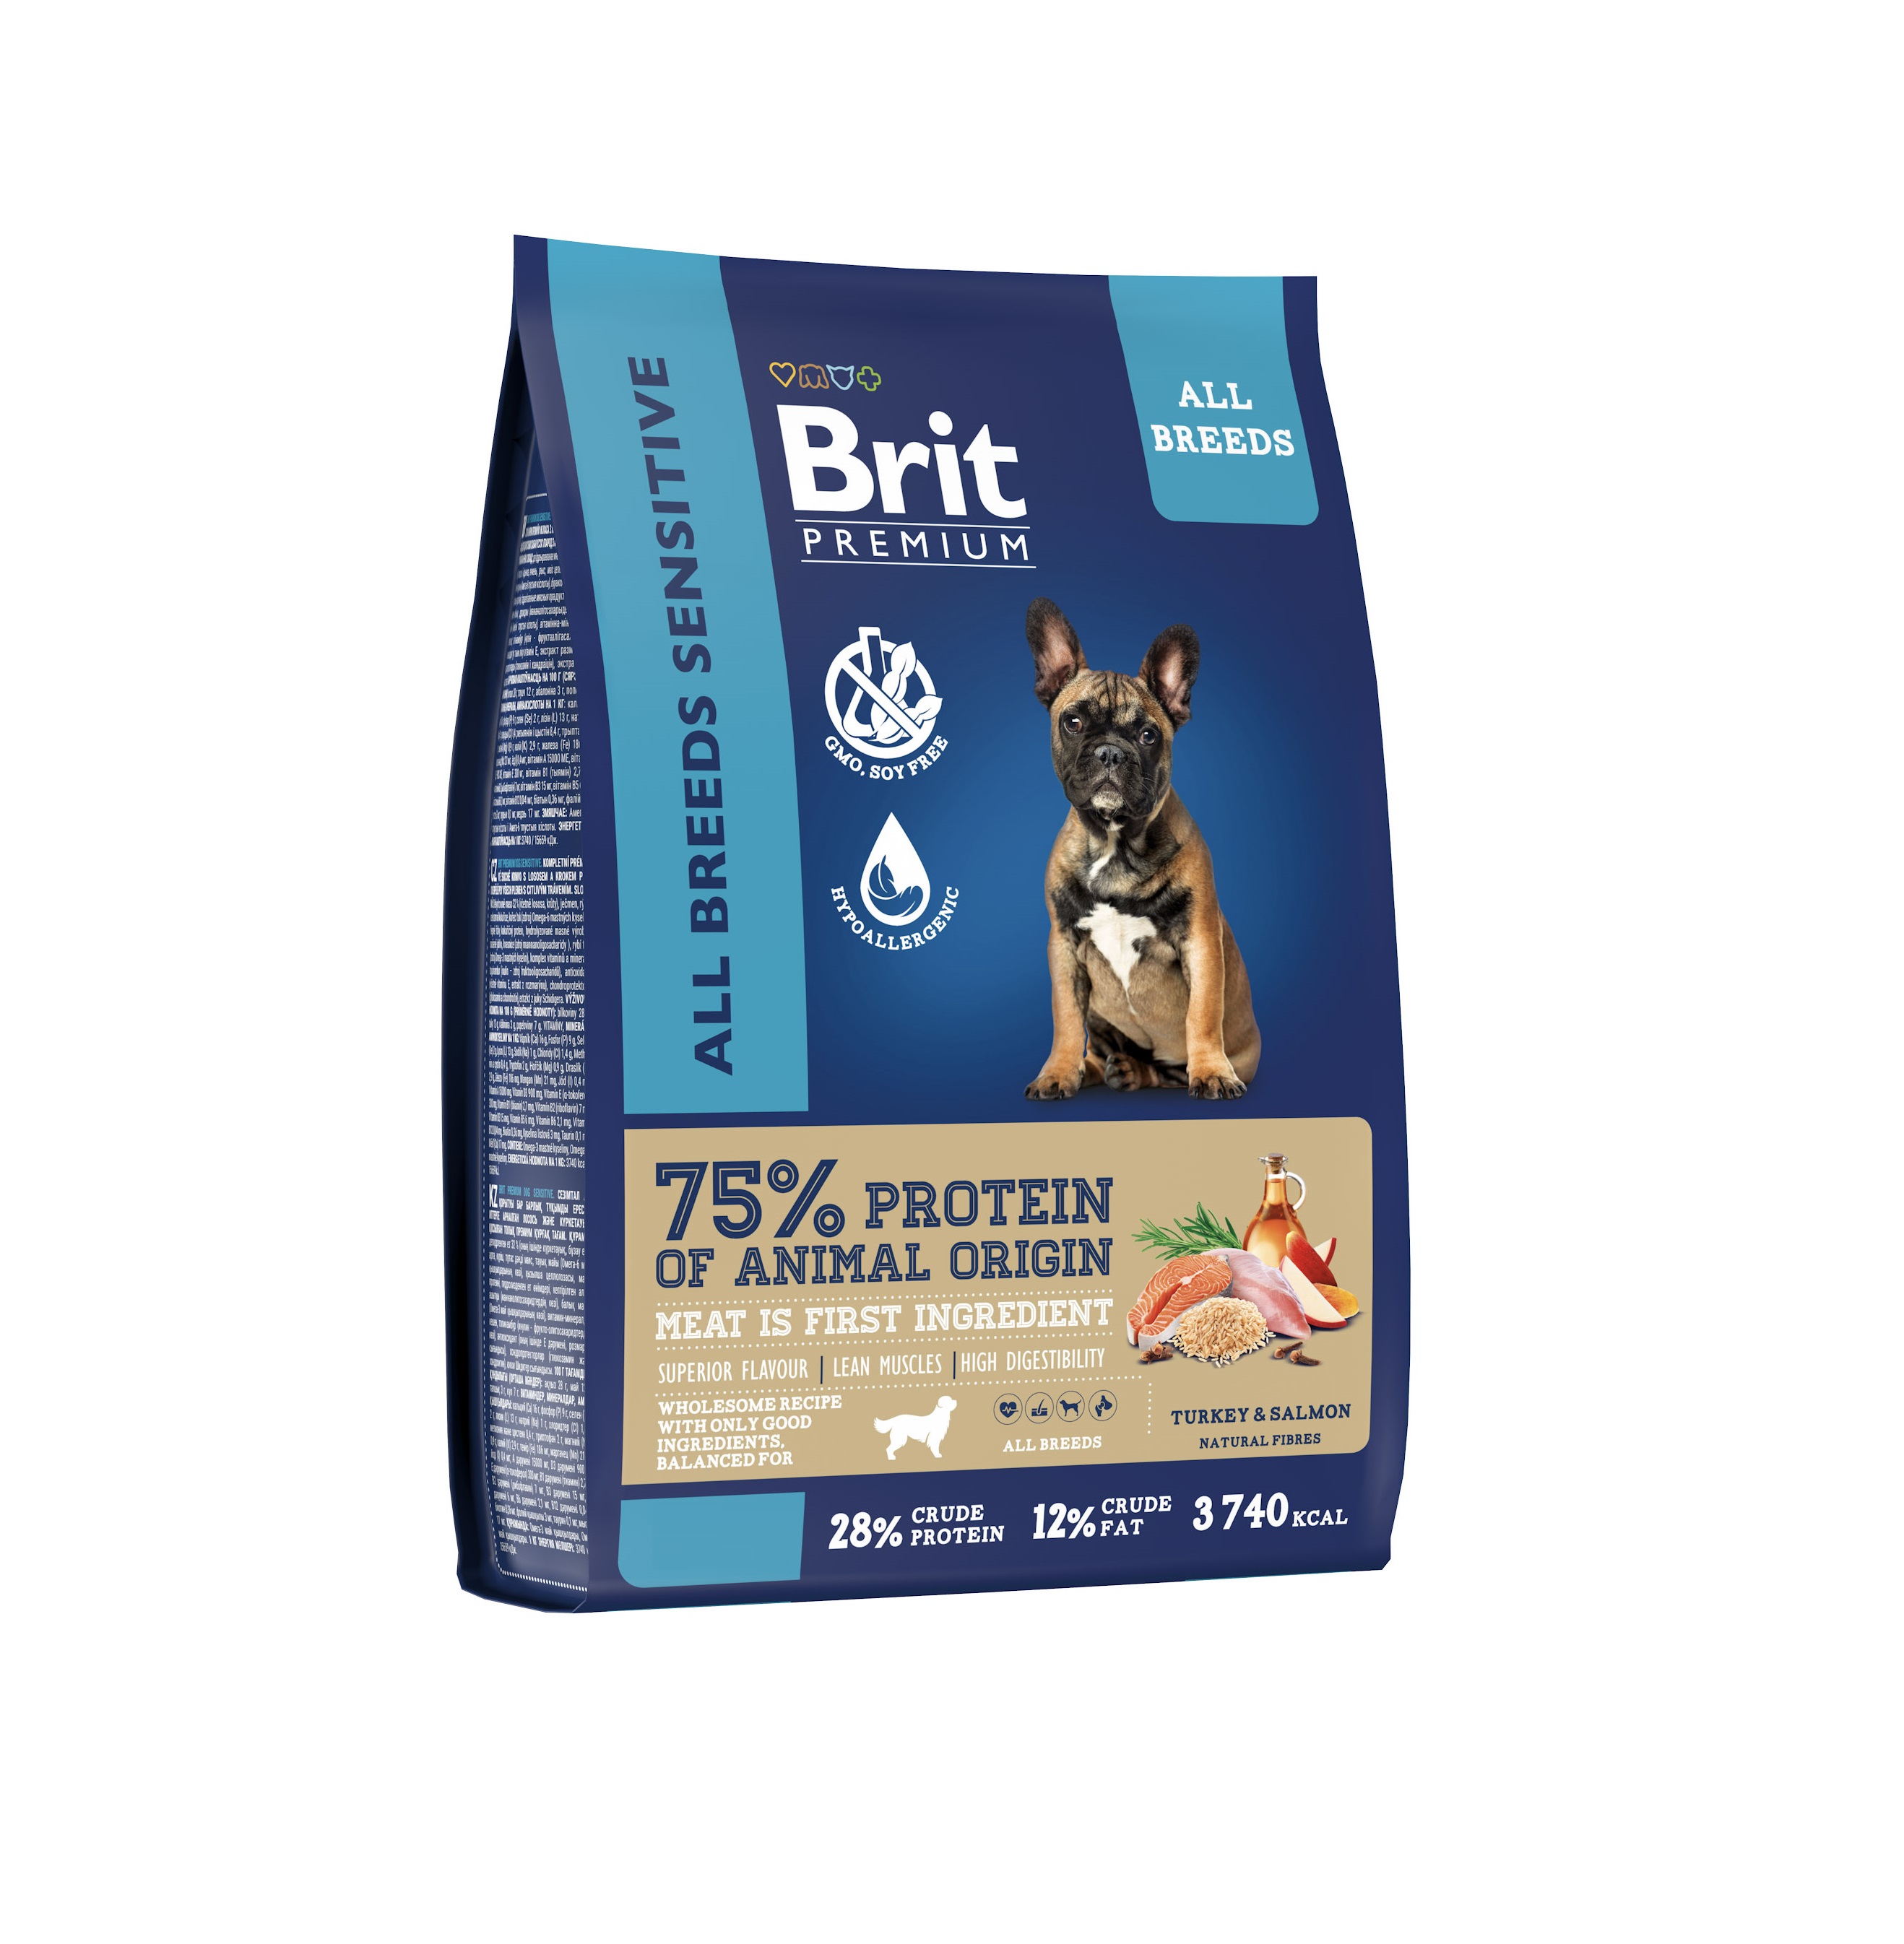 Брит 8кг для собак всех пород Лосось/Индейка - для Чувствительного пищеварения (Brit Premium by Nature)